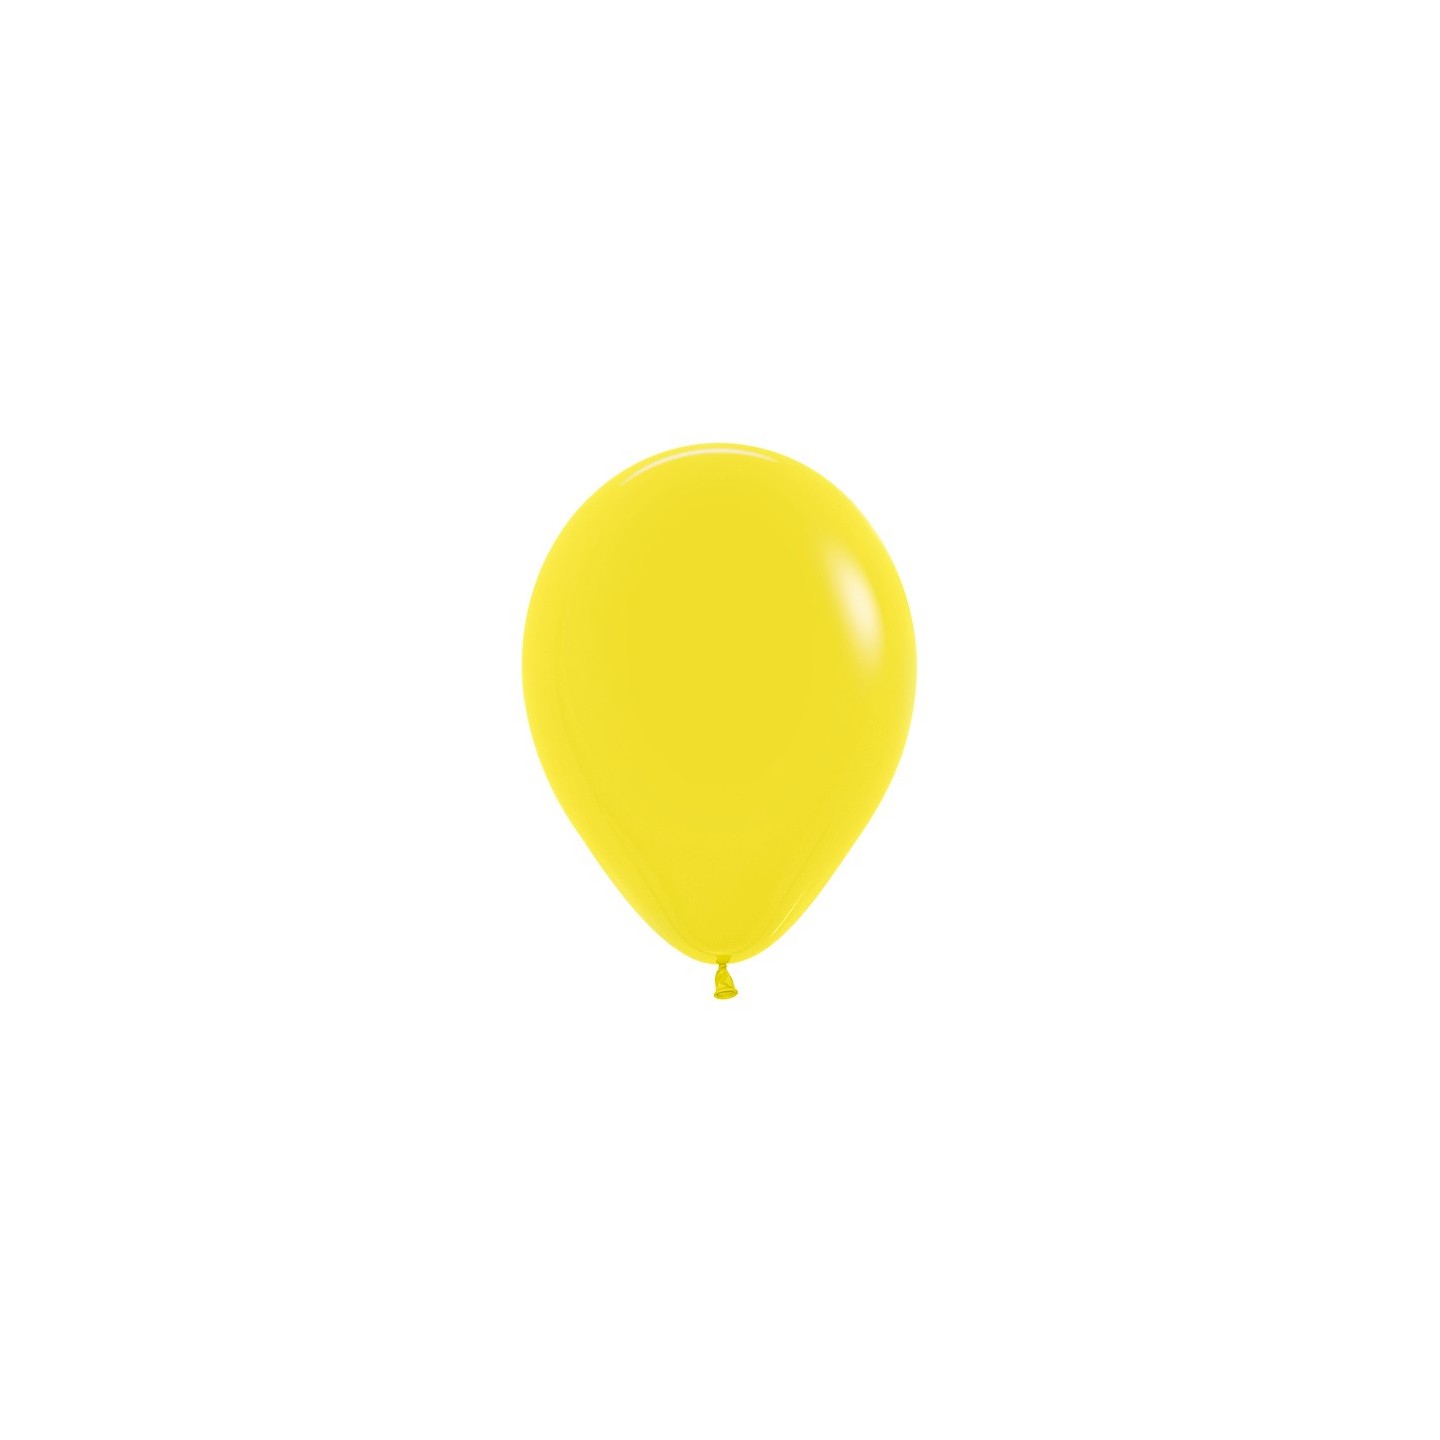 sempertex ballonnen geel